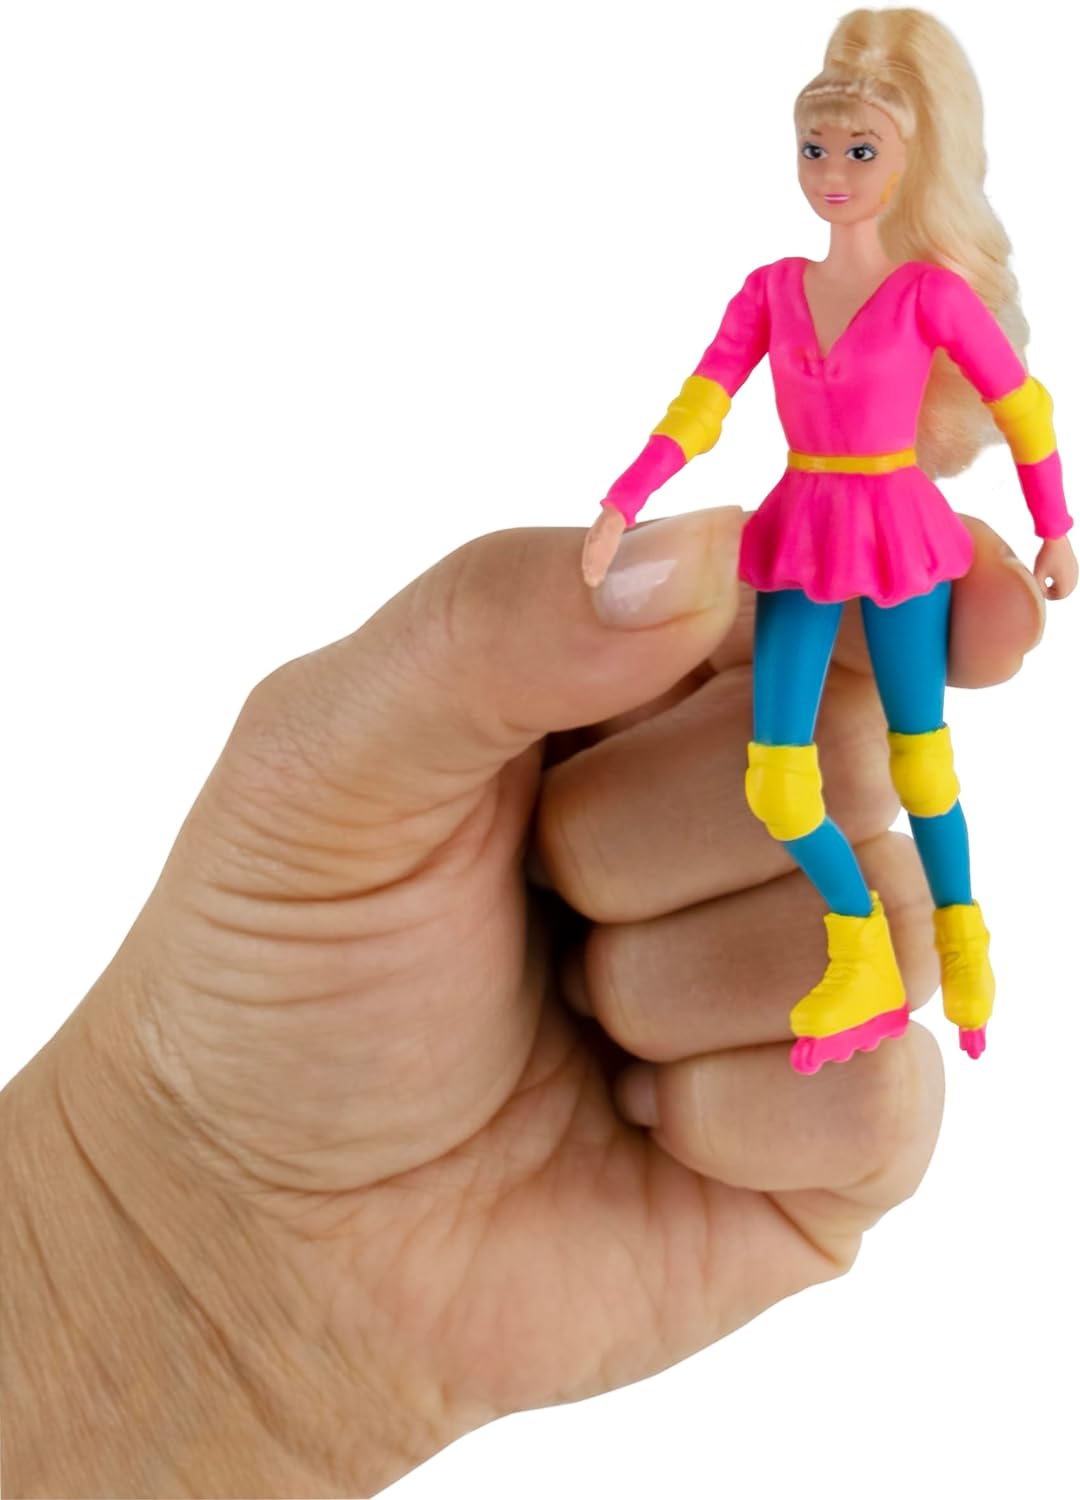 World's Smallest Posable Barbie’s